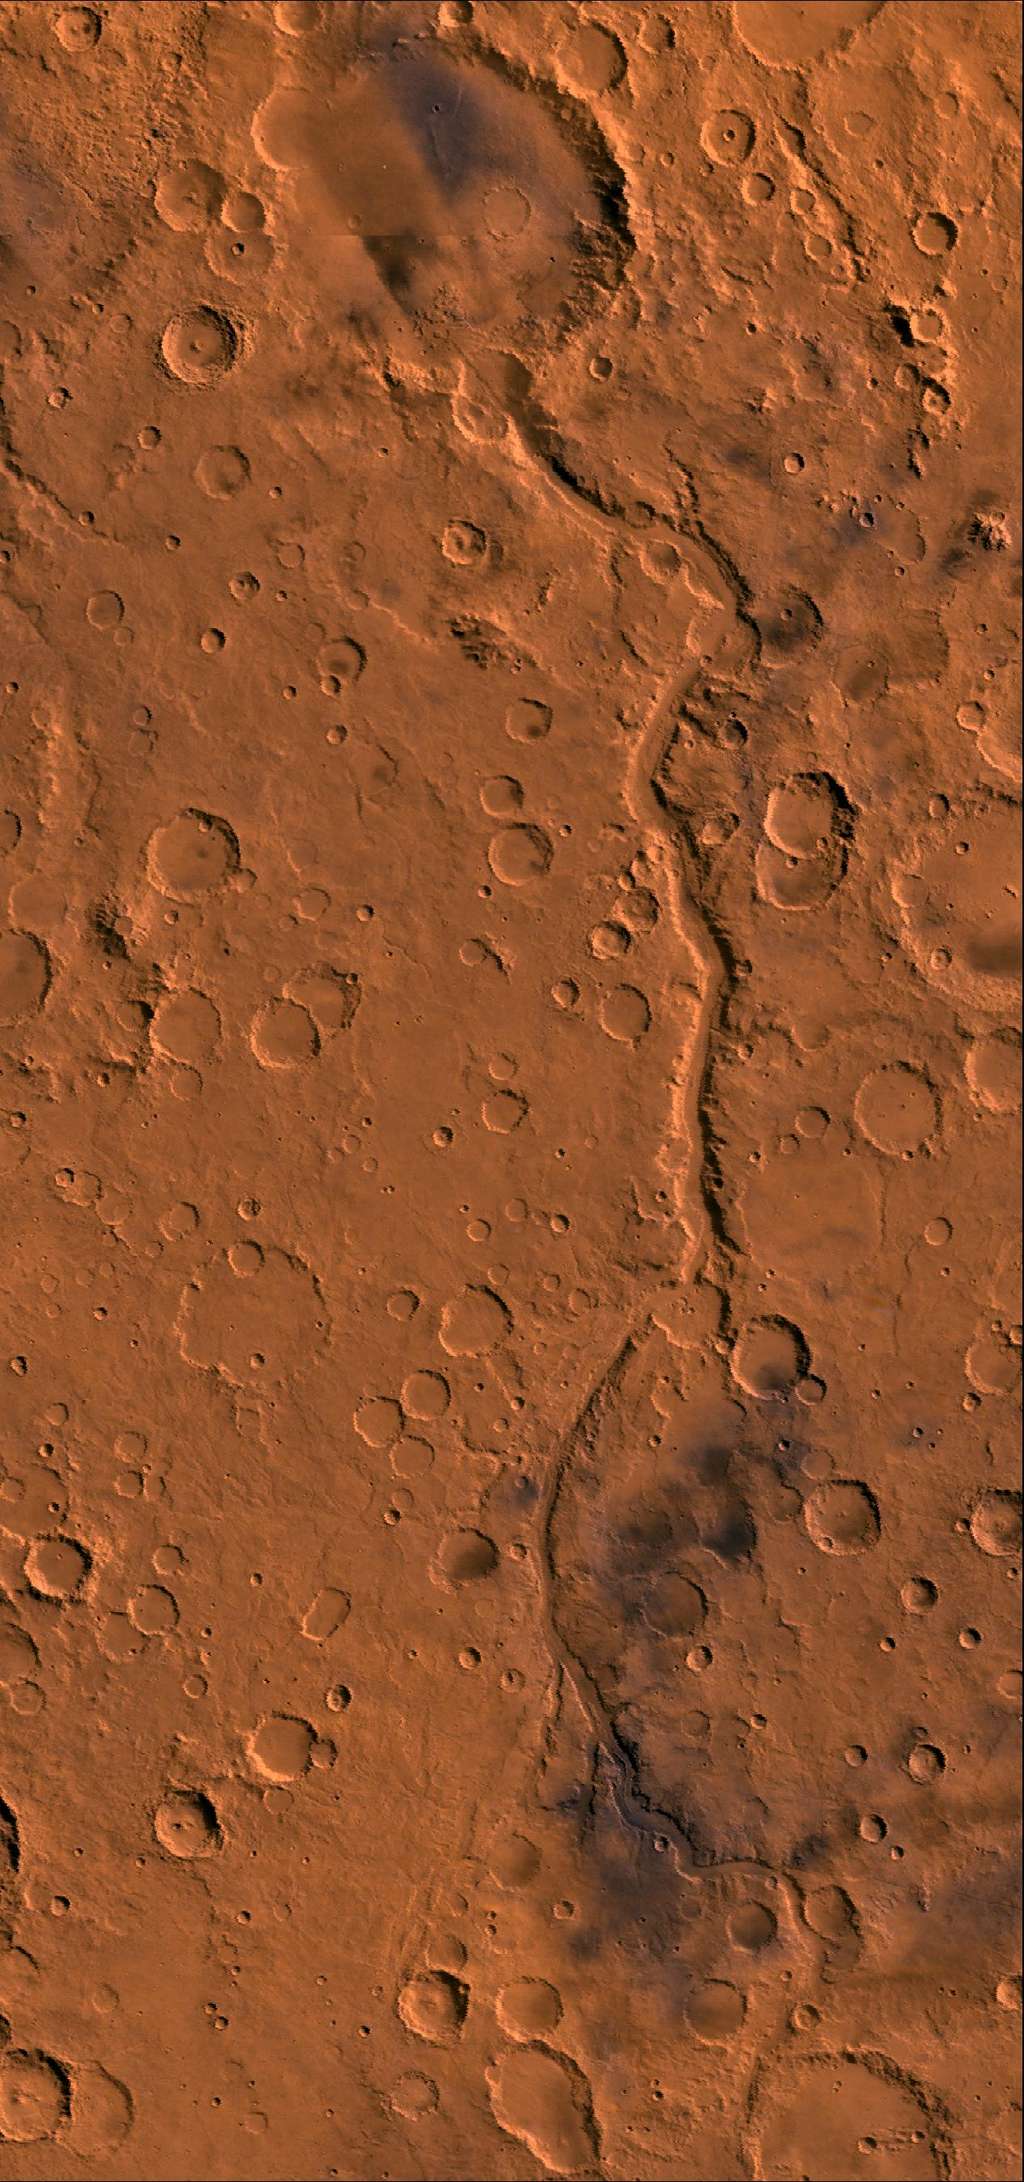 Long de plus de 800 km, Ma’adim Vallis est l'un des plus grands canyons de Mars après le célèbre Valles Marineris. En haut, le canyon débouche sur le cratère Gusev (166 km de diamètre) où demeure le rover Spirit. Faute d'indices tangibles, l'existence d'un ancien lac reste à confirmer. © Nasa, JPL, USGS